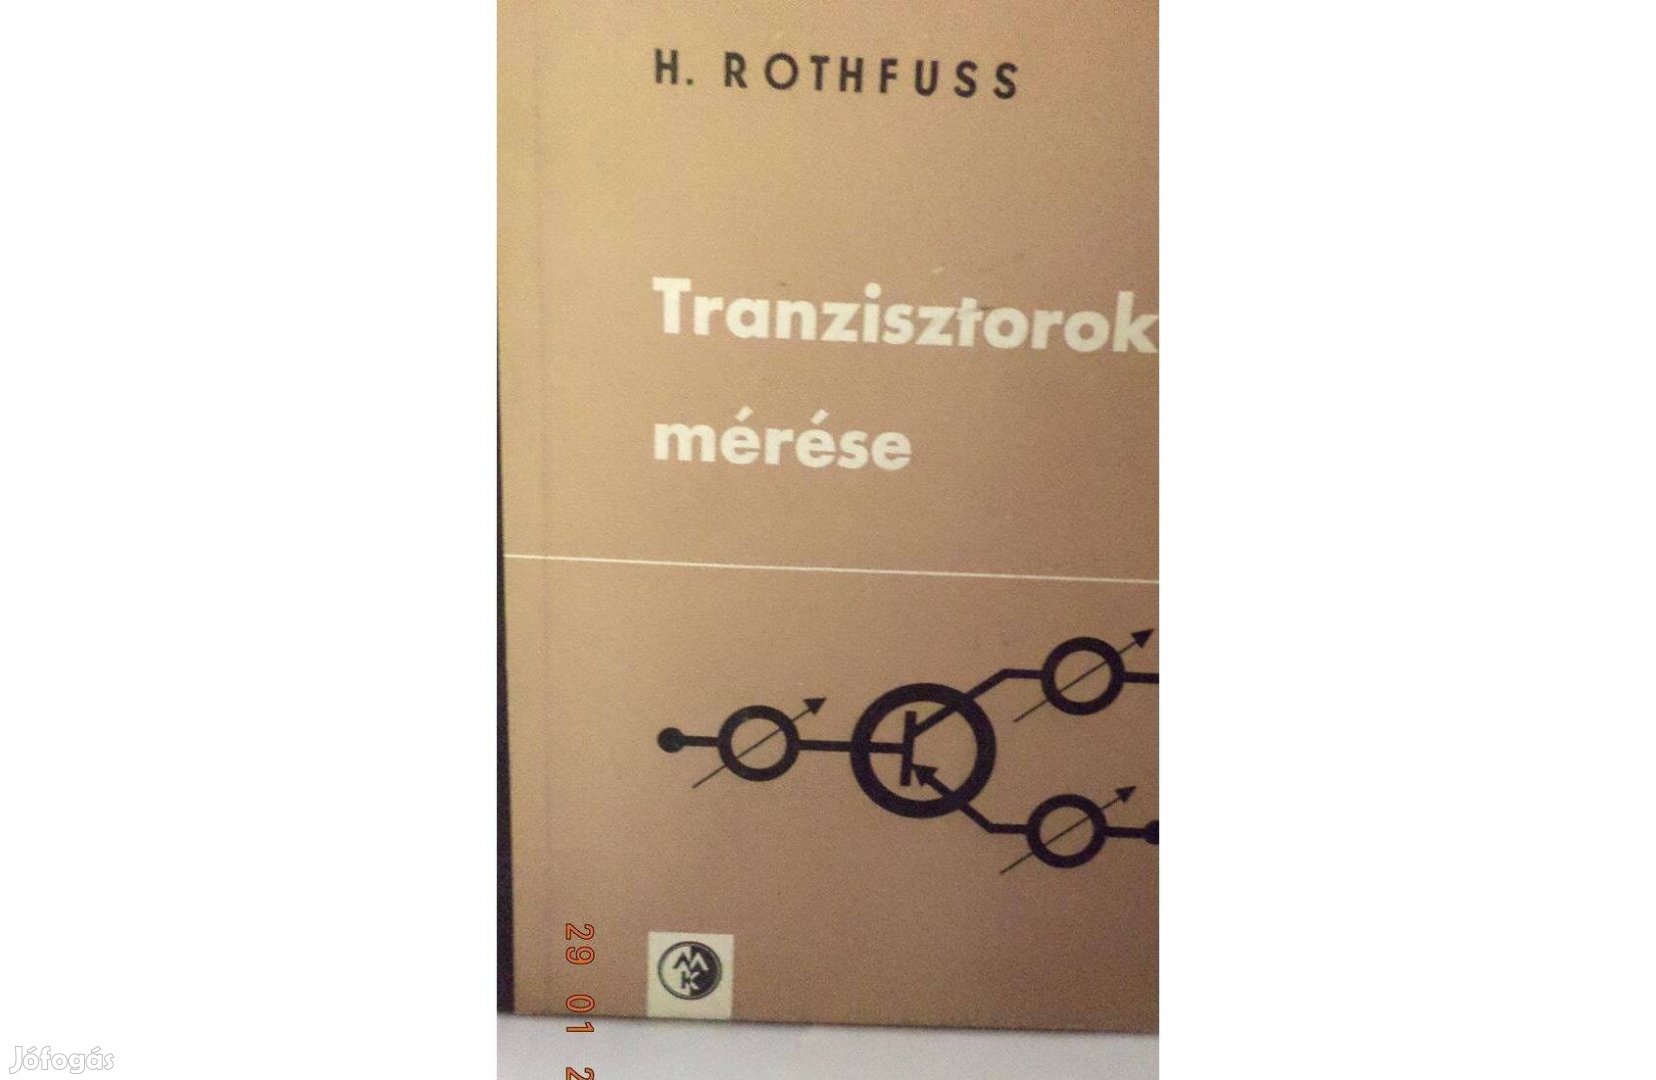 H. Rothfuss: Tranzisztorok mérése